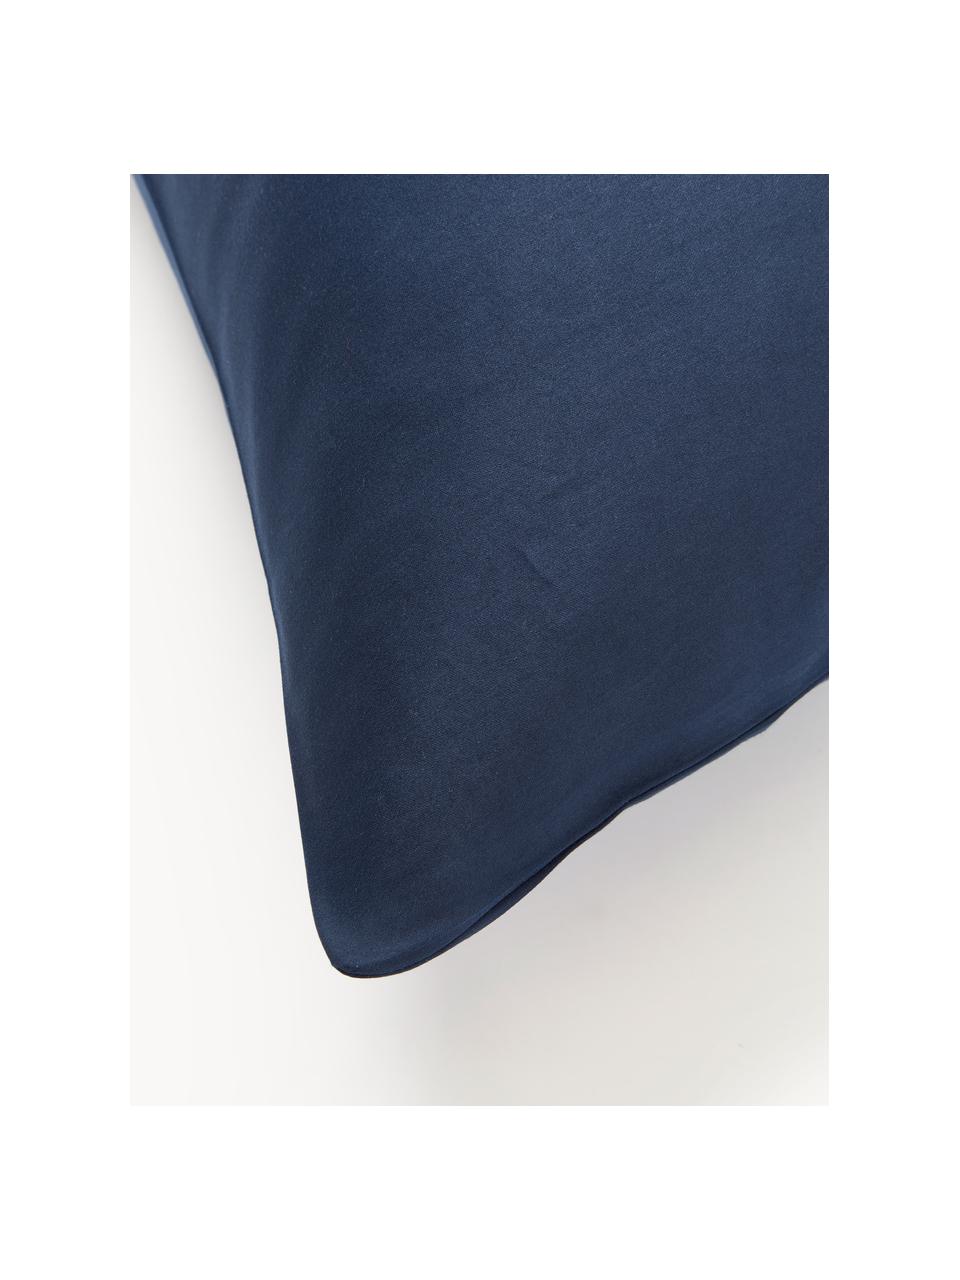 Poszewka na poduszkę z satyny bawełnianej Comfort, Ciemny niebieski, S 40 x D 80 cm